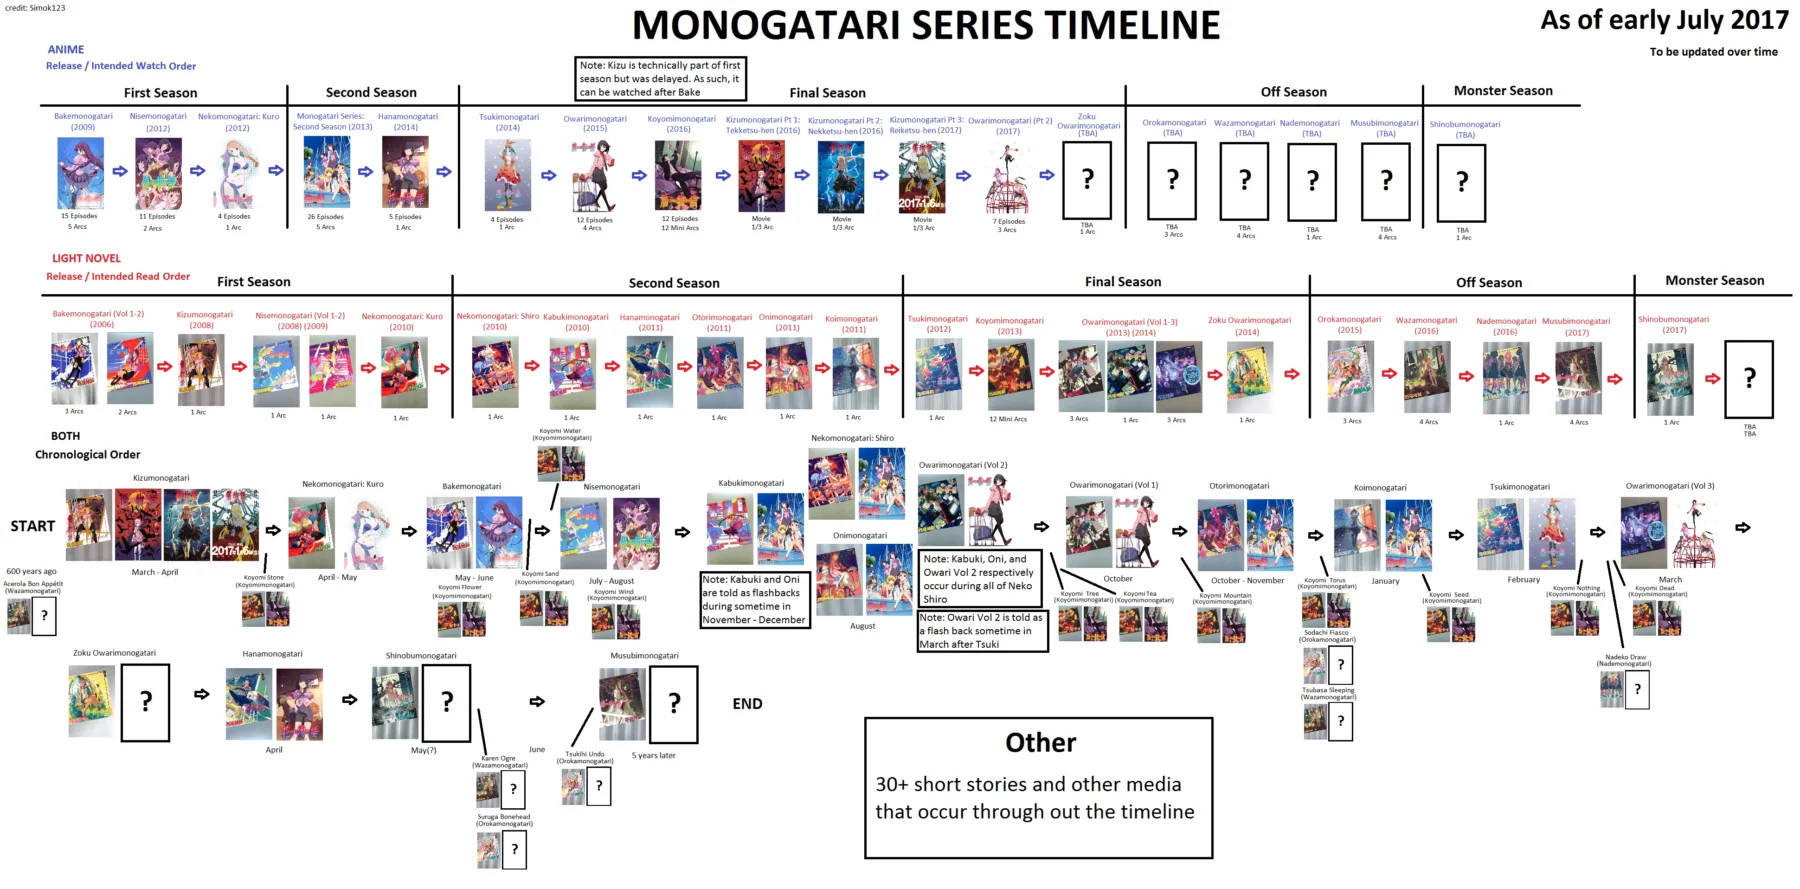 linea temporal del anime de mnogatari